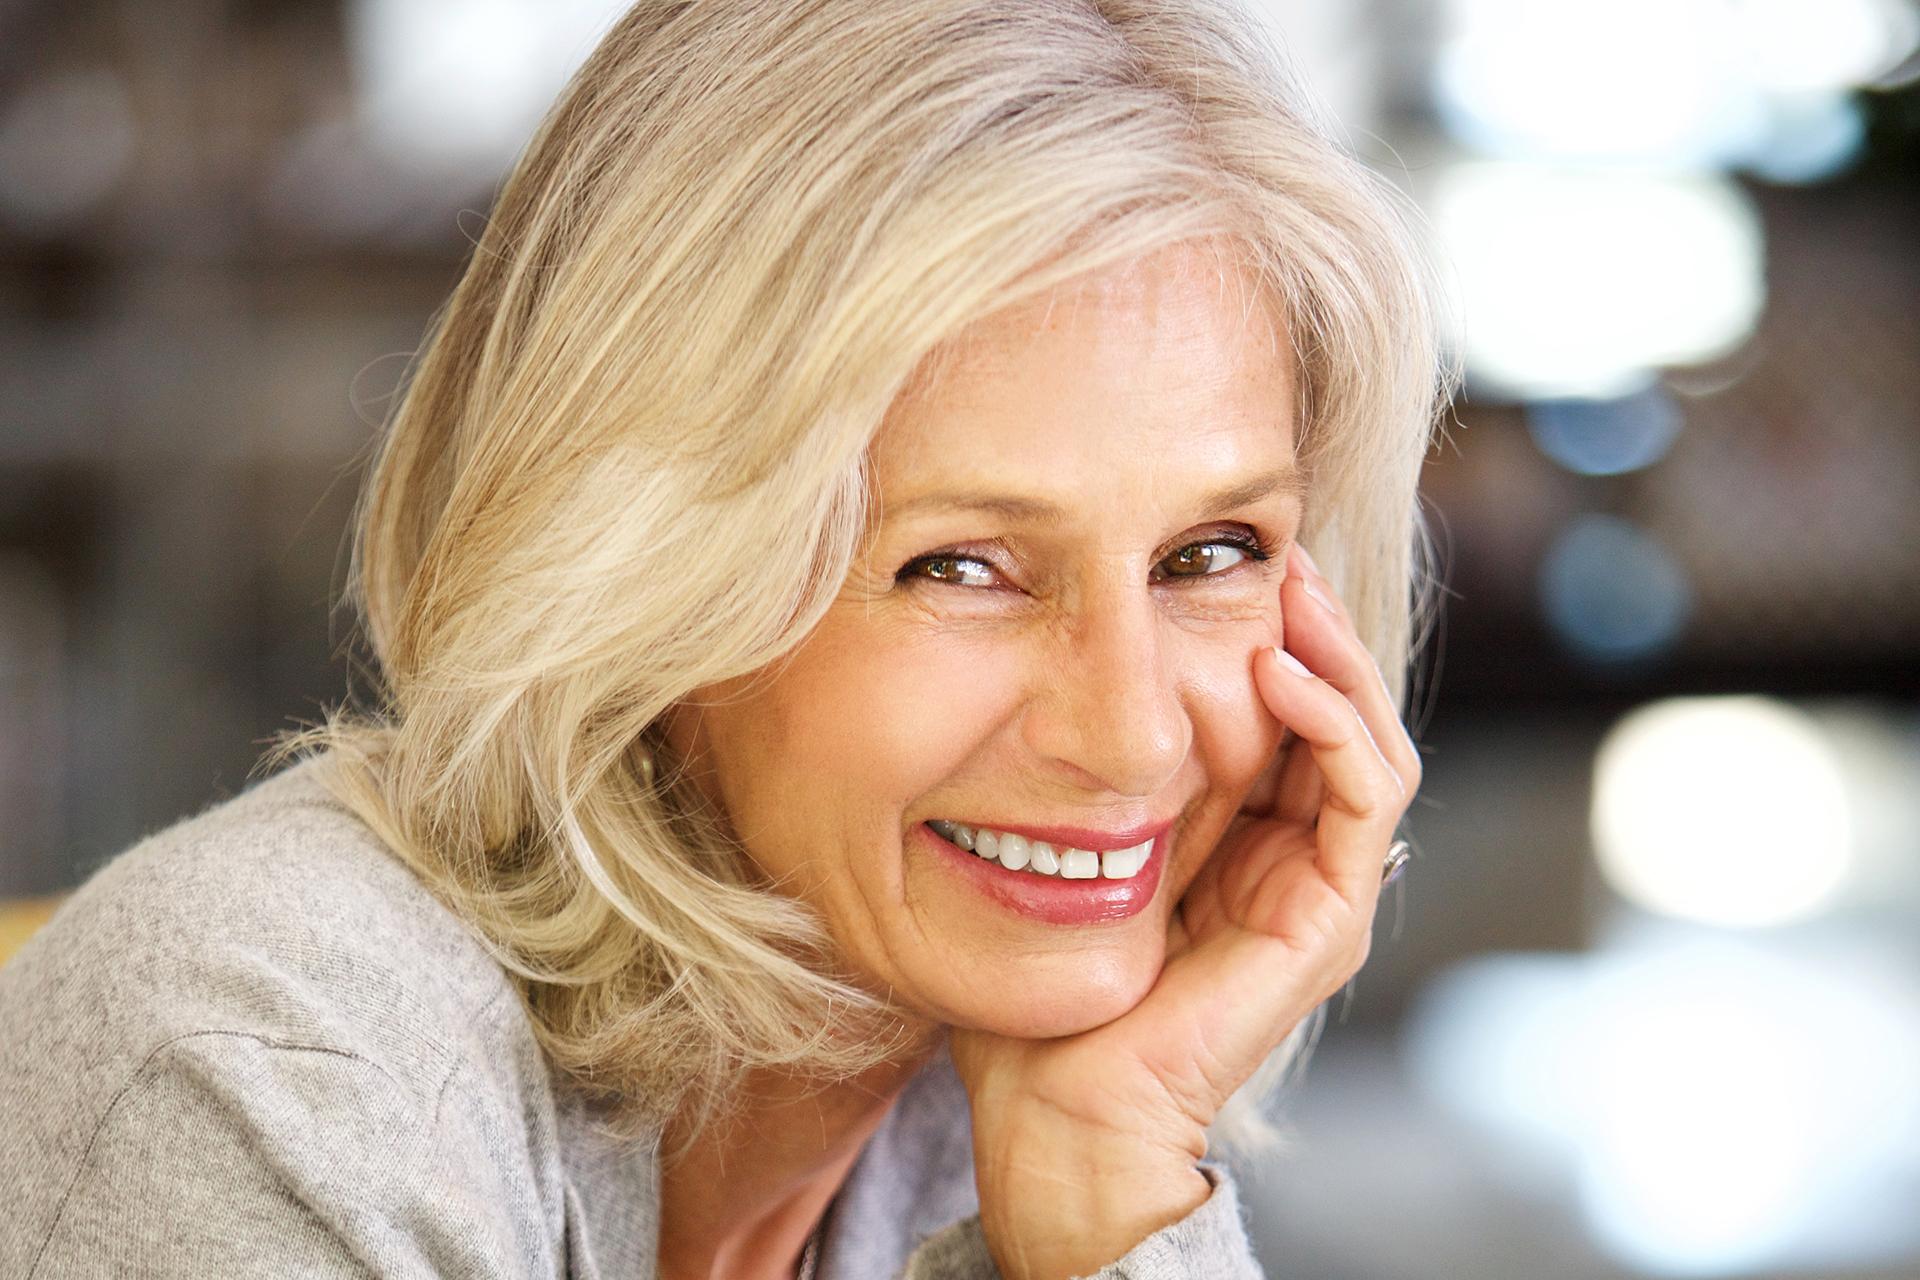 Visage d'une femme souriante agée d'une cinquantaine d'années